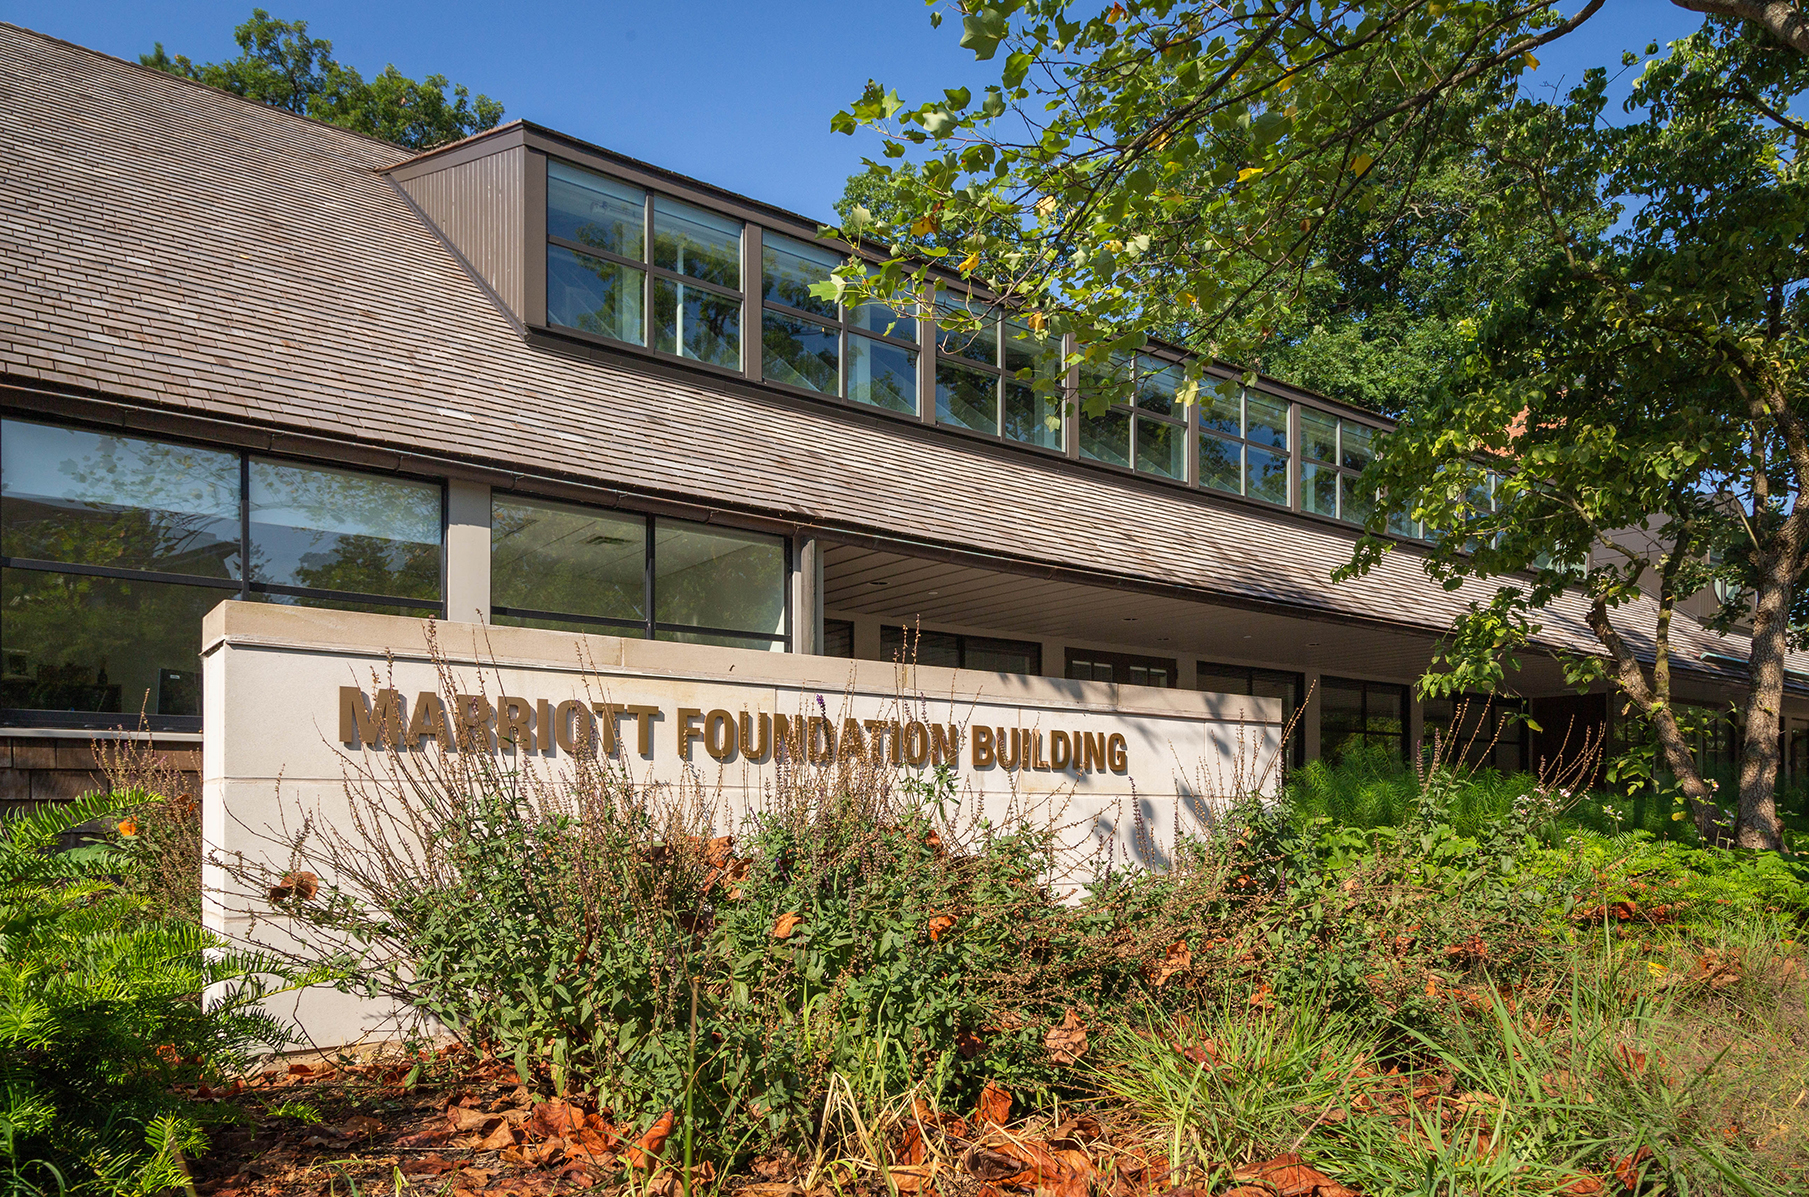 Marriott Foundation building